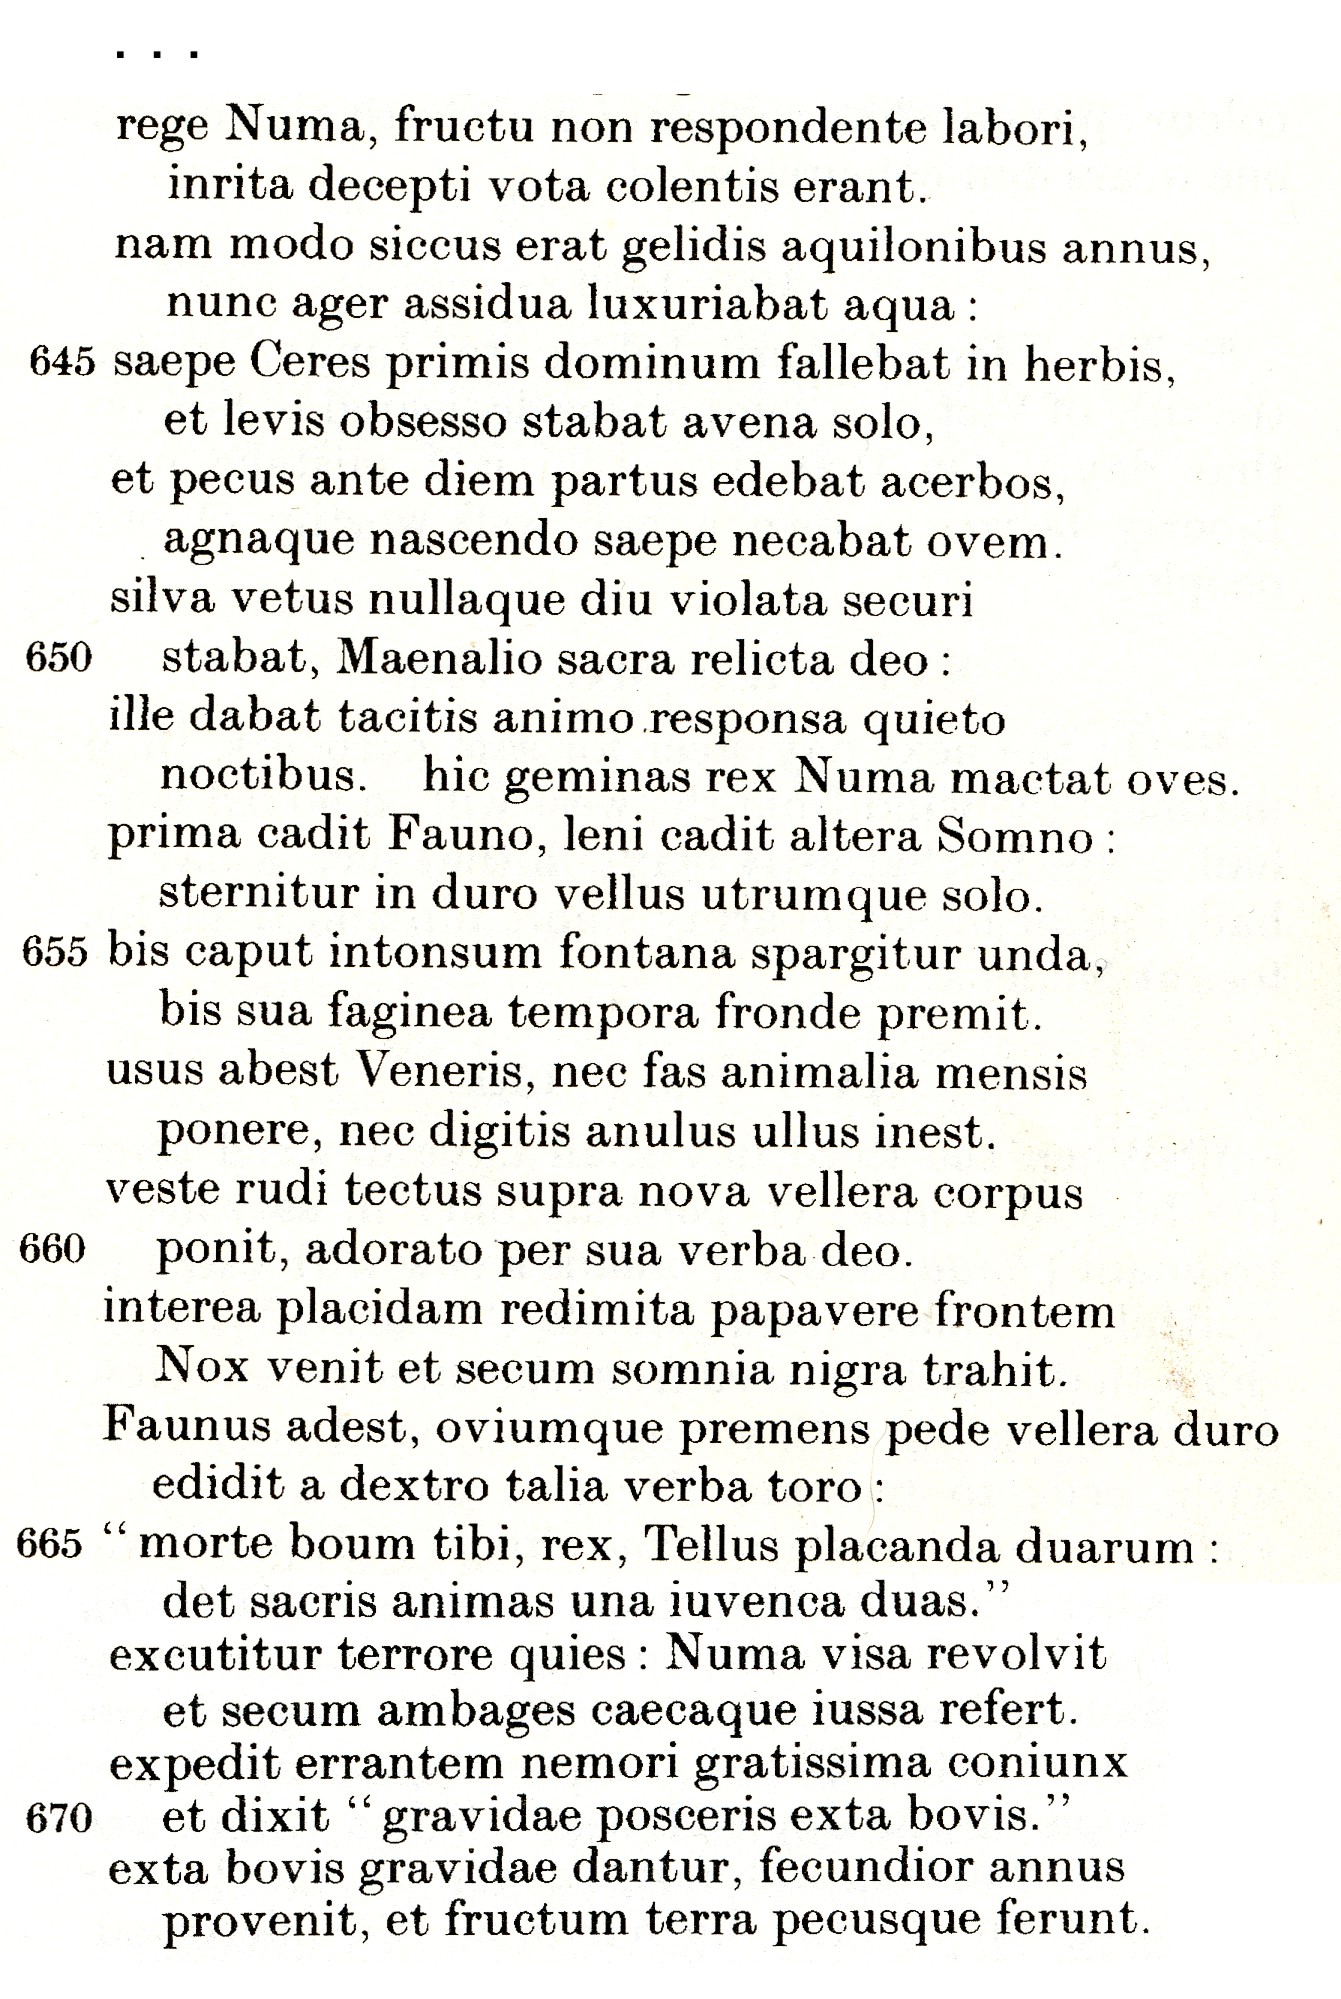 Ovid Fasti IV.641-672